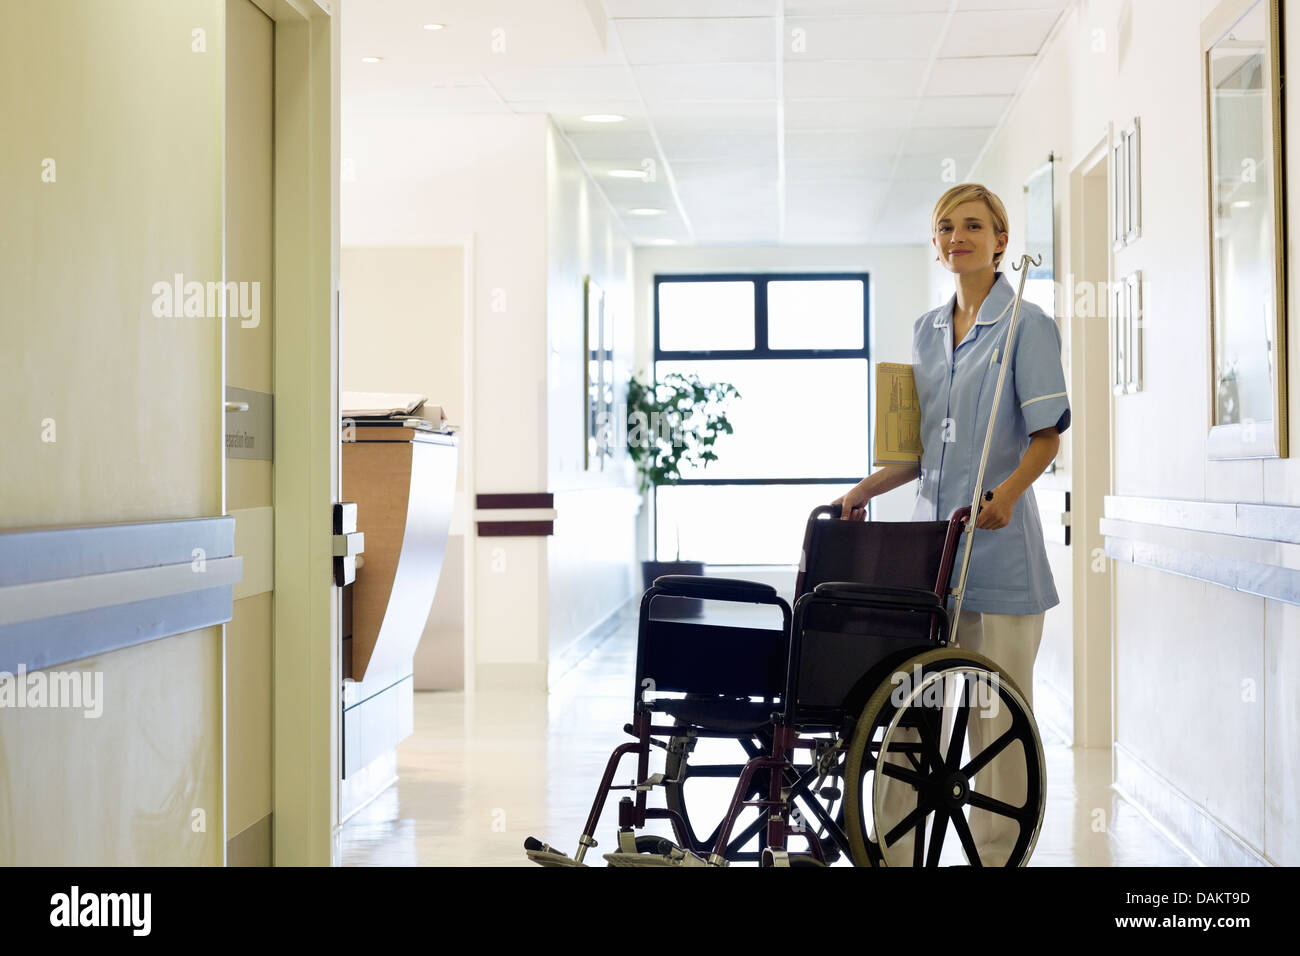 Schieben des Rollstuhls im Krankenhaus Flur Krankenschwester Stockfoto